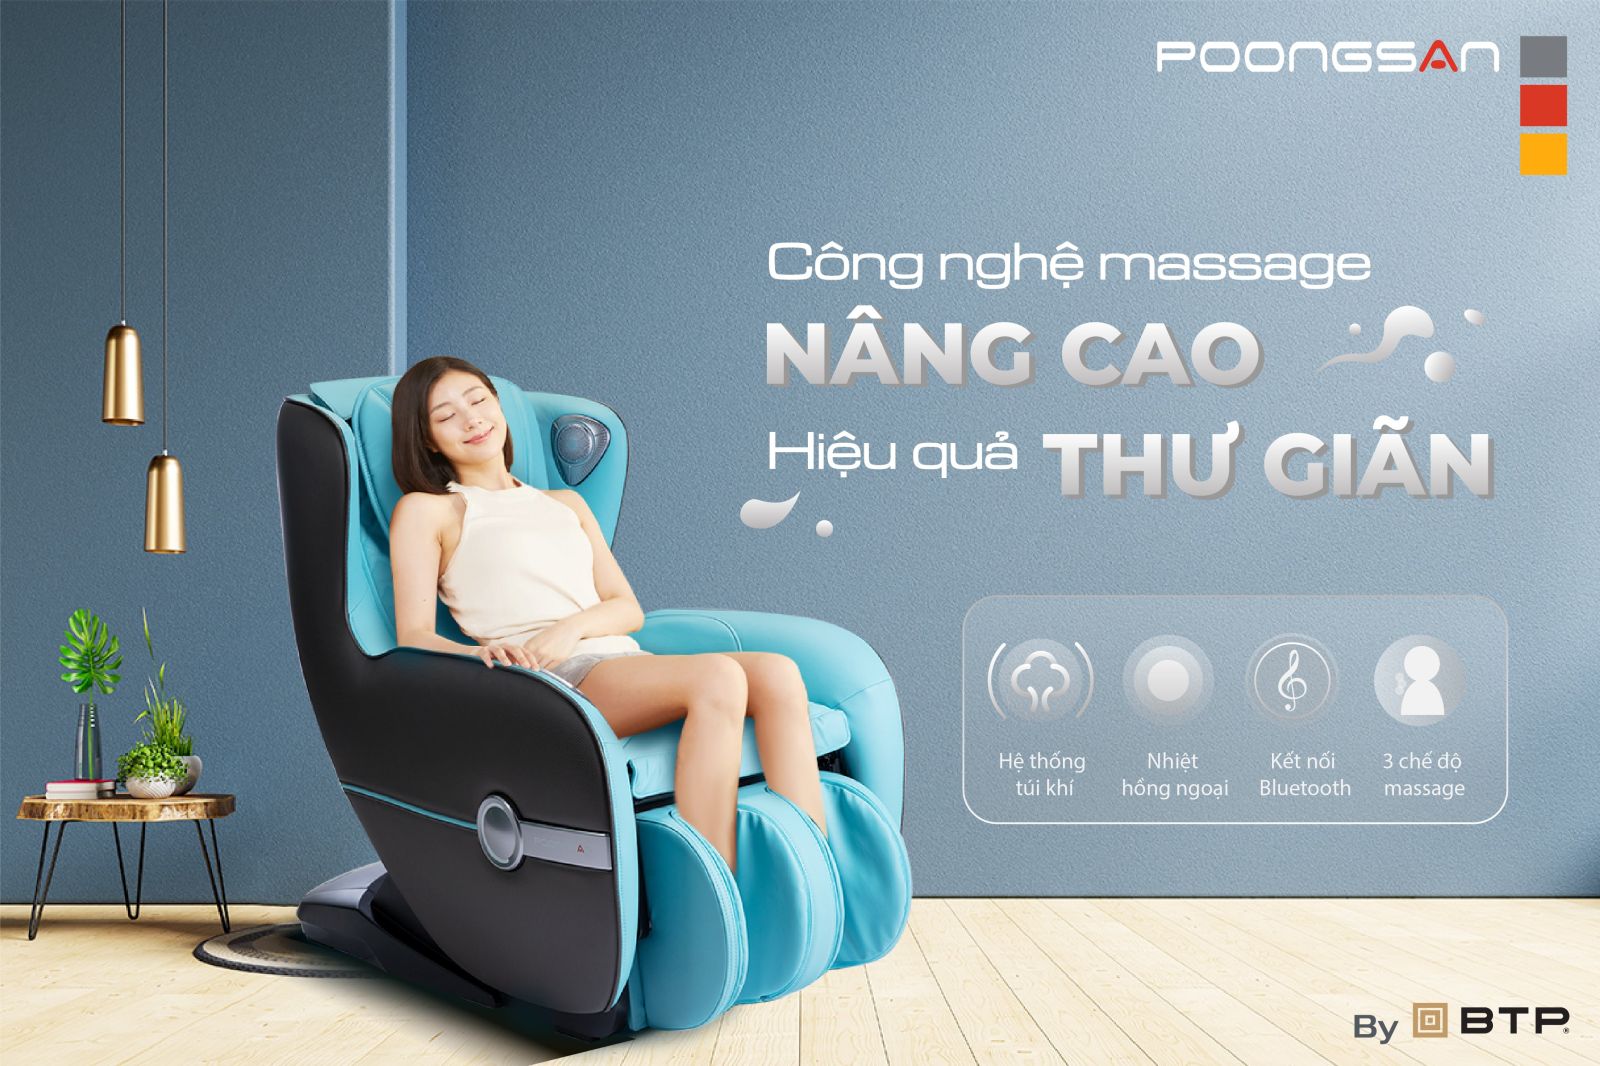 Ghế massage mini sở hữu công nghệ hiện đại nâng cao hiệu quả thư giãn